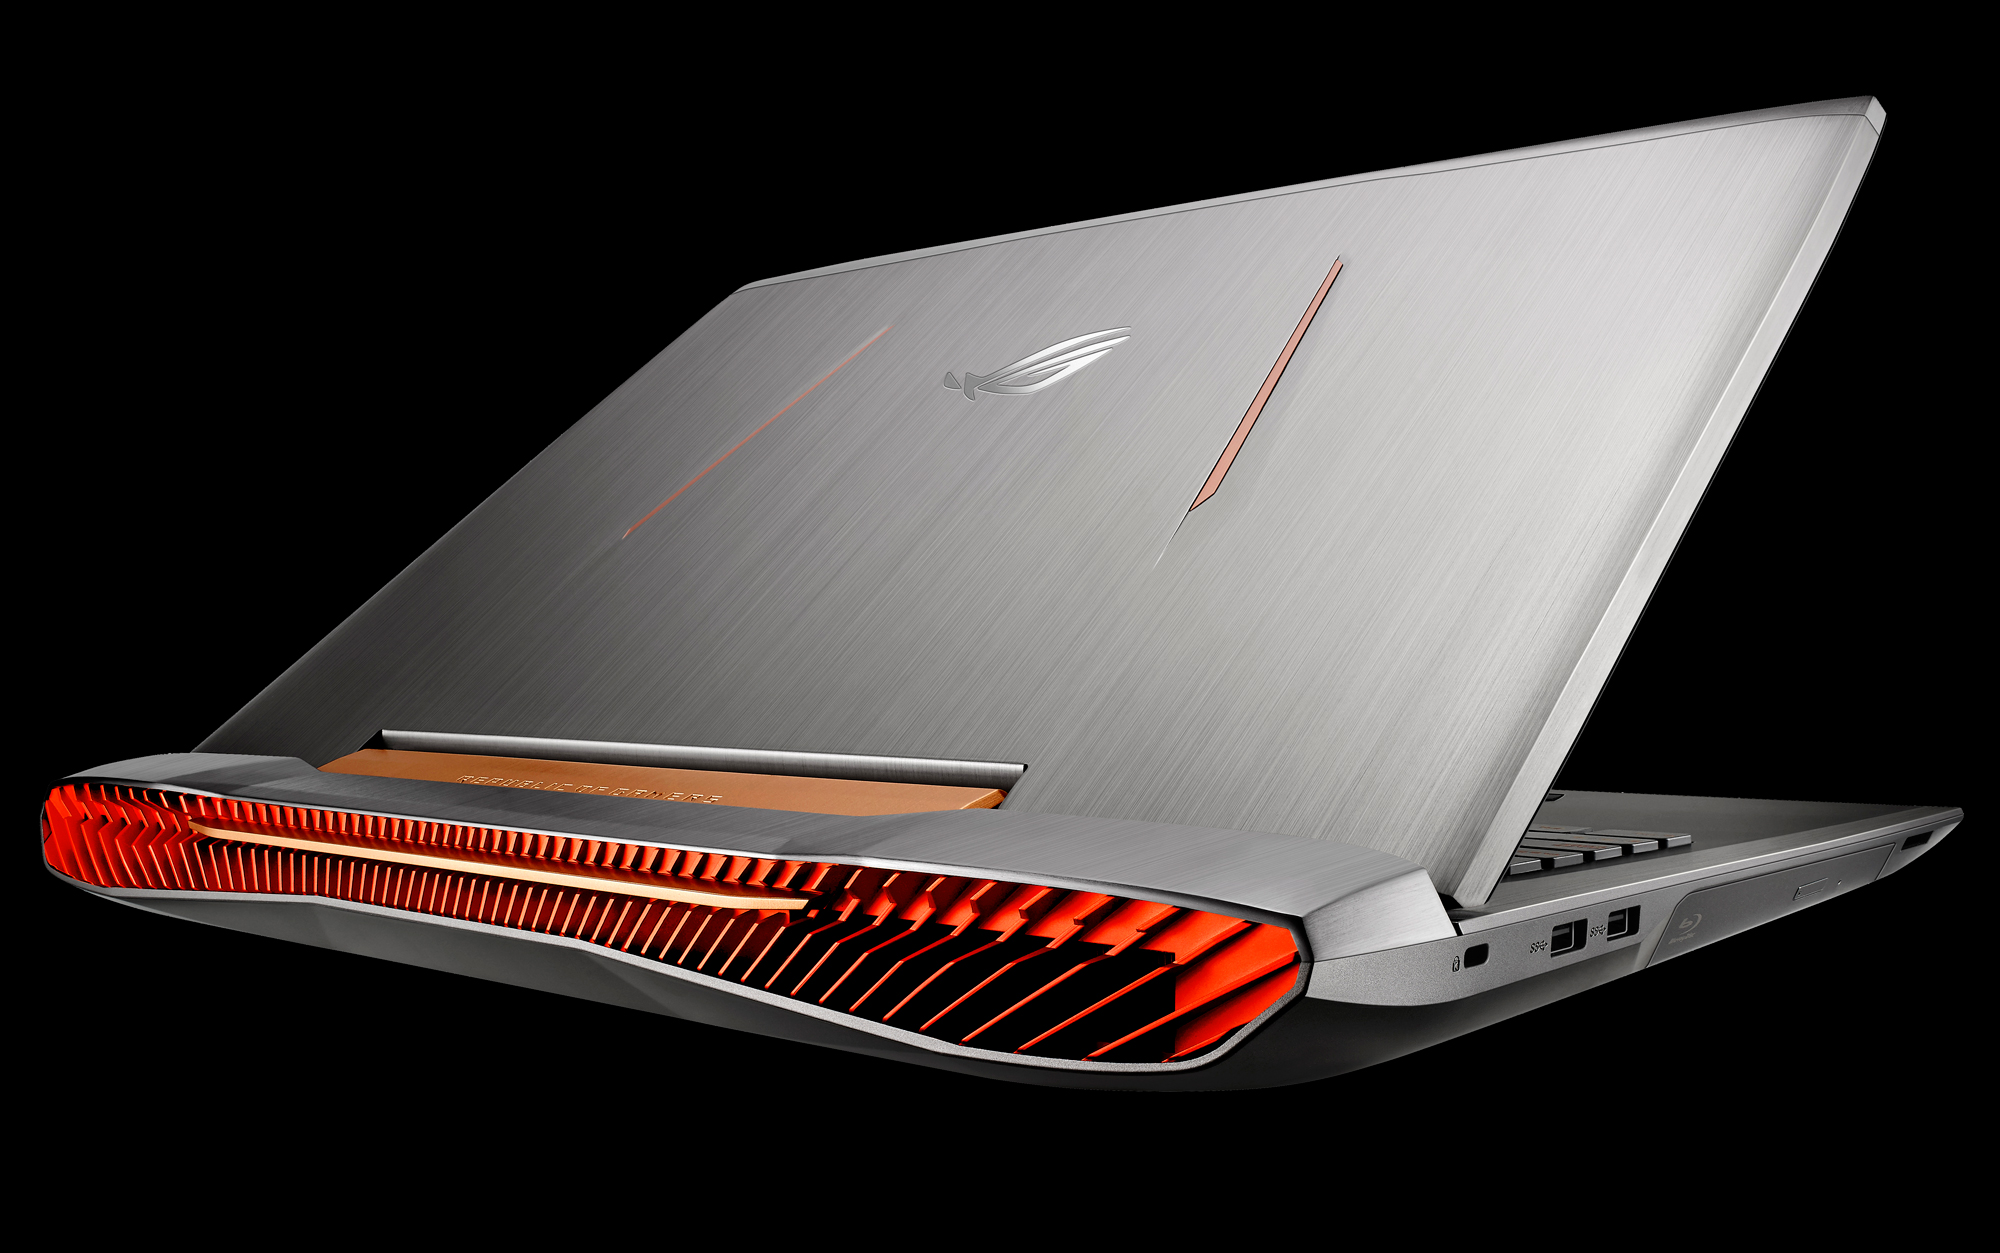 Asus ROG G752 Top Gaming Laptop 2016